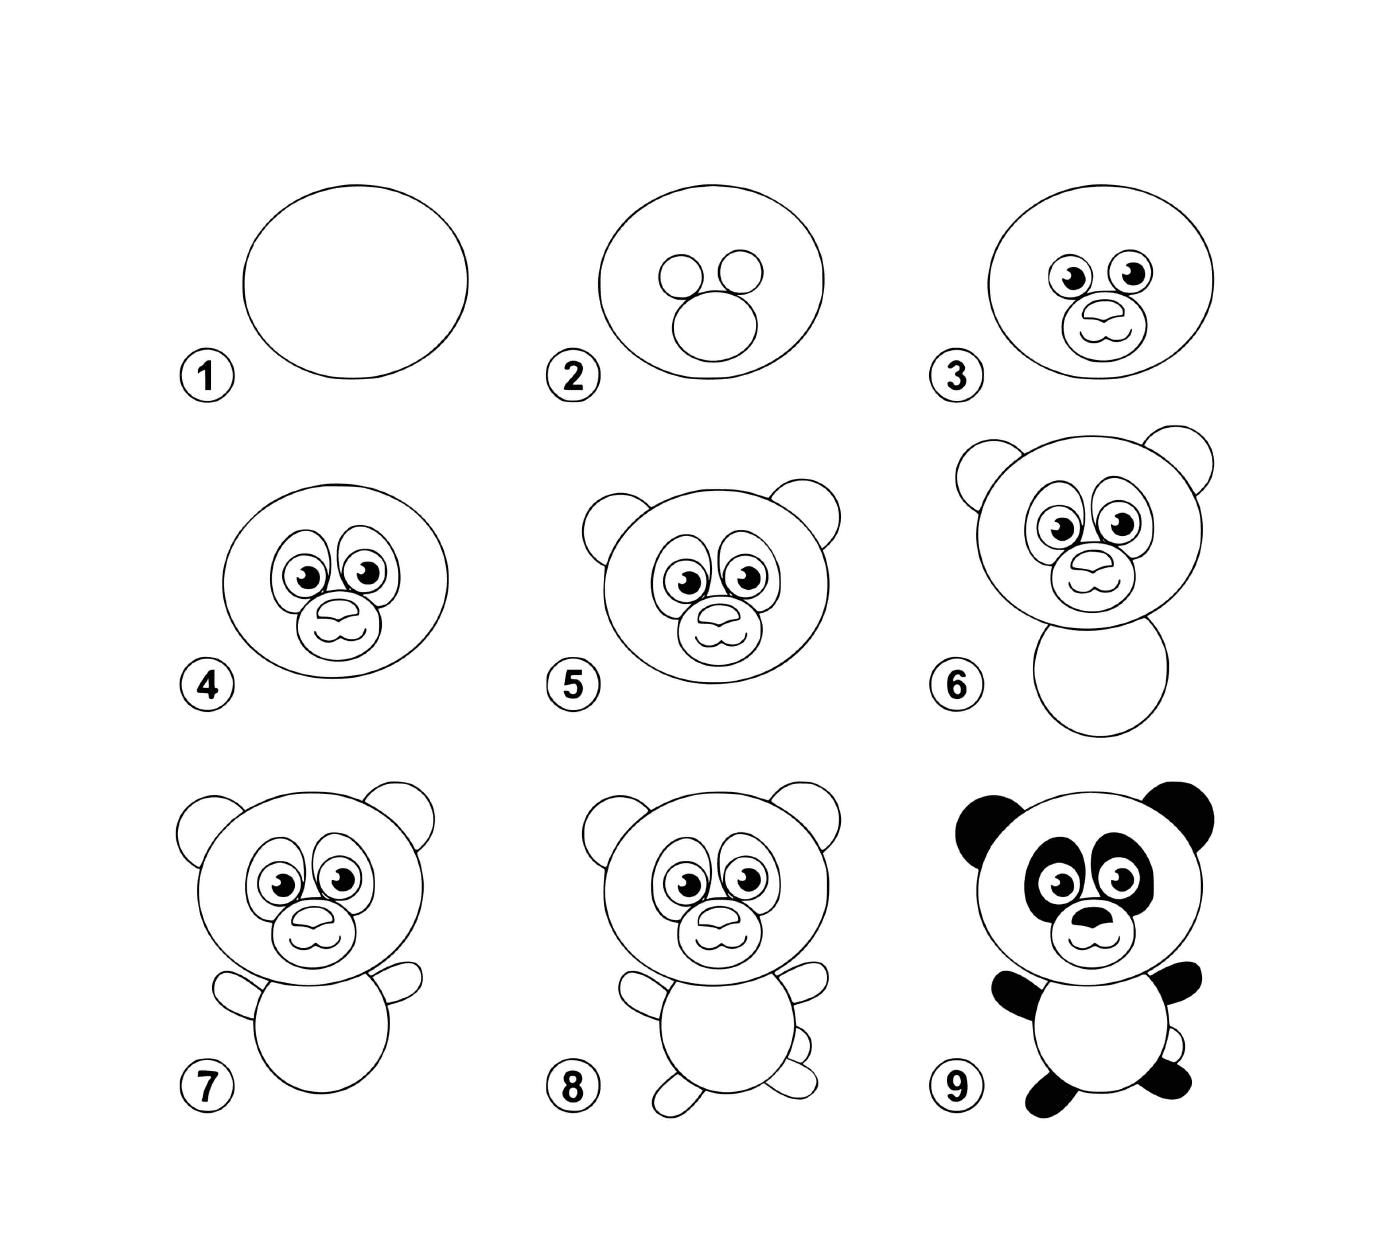  如何一步一步地绘制熊猫 